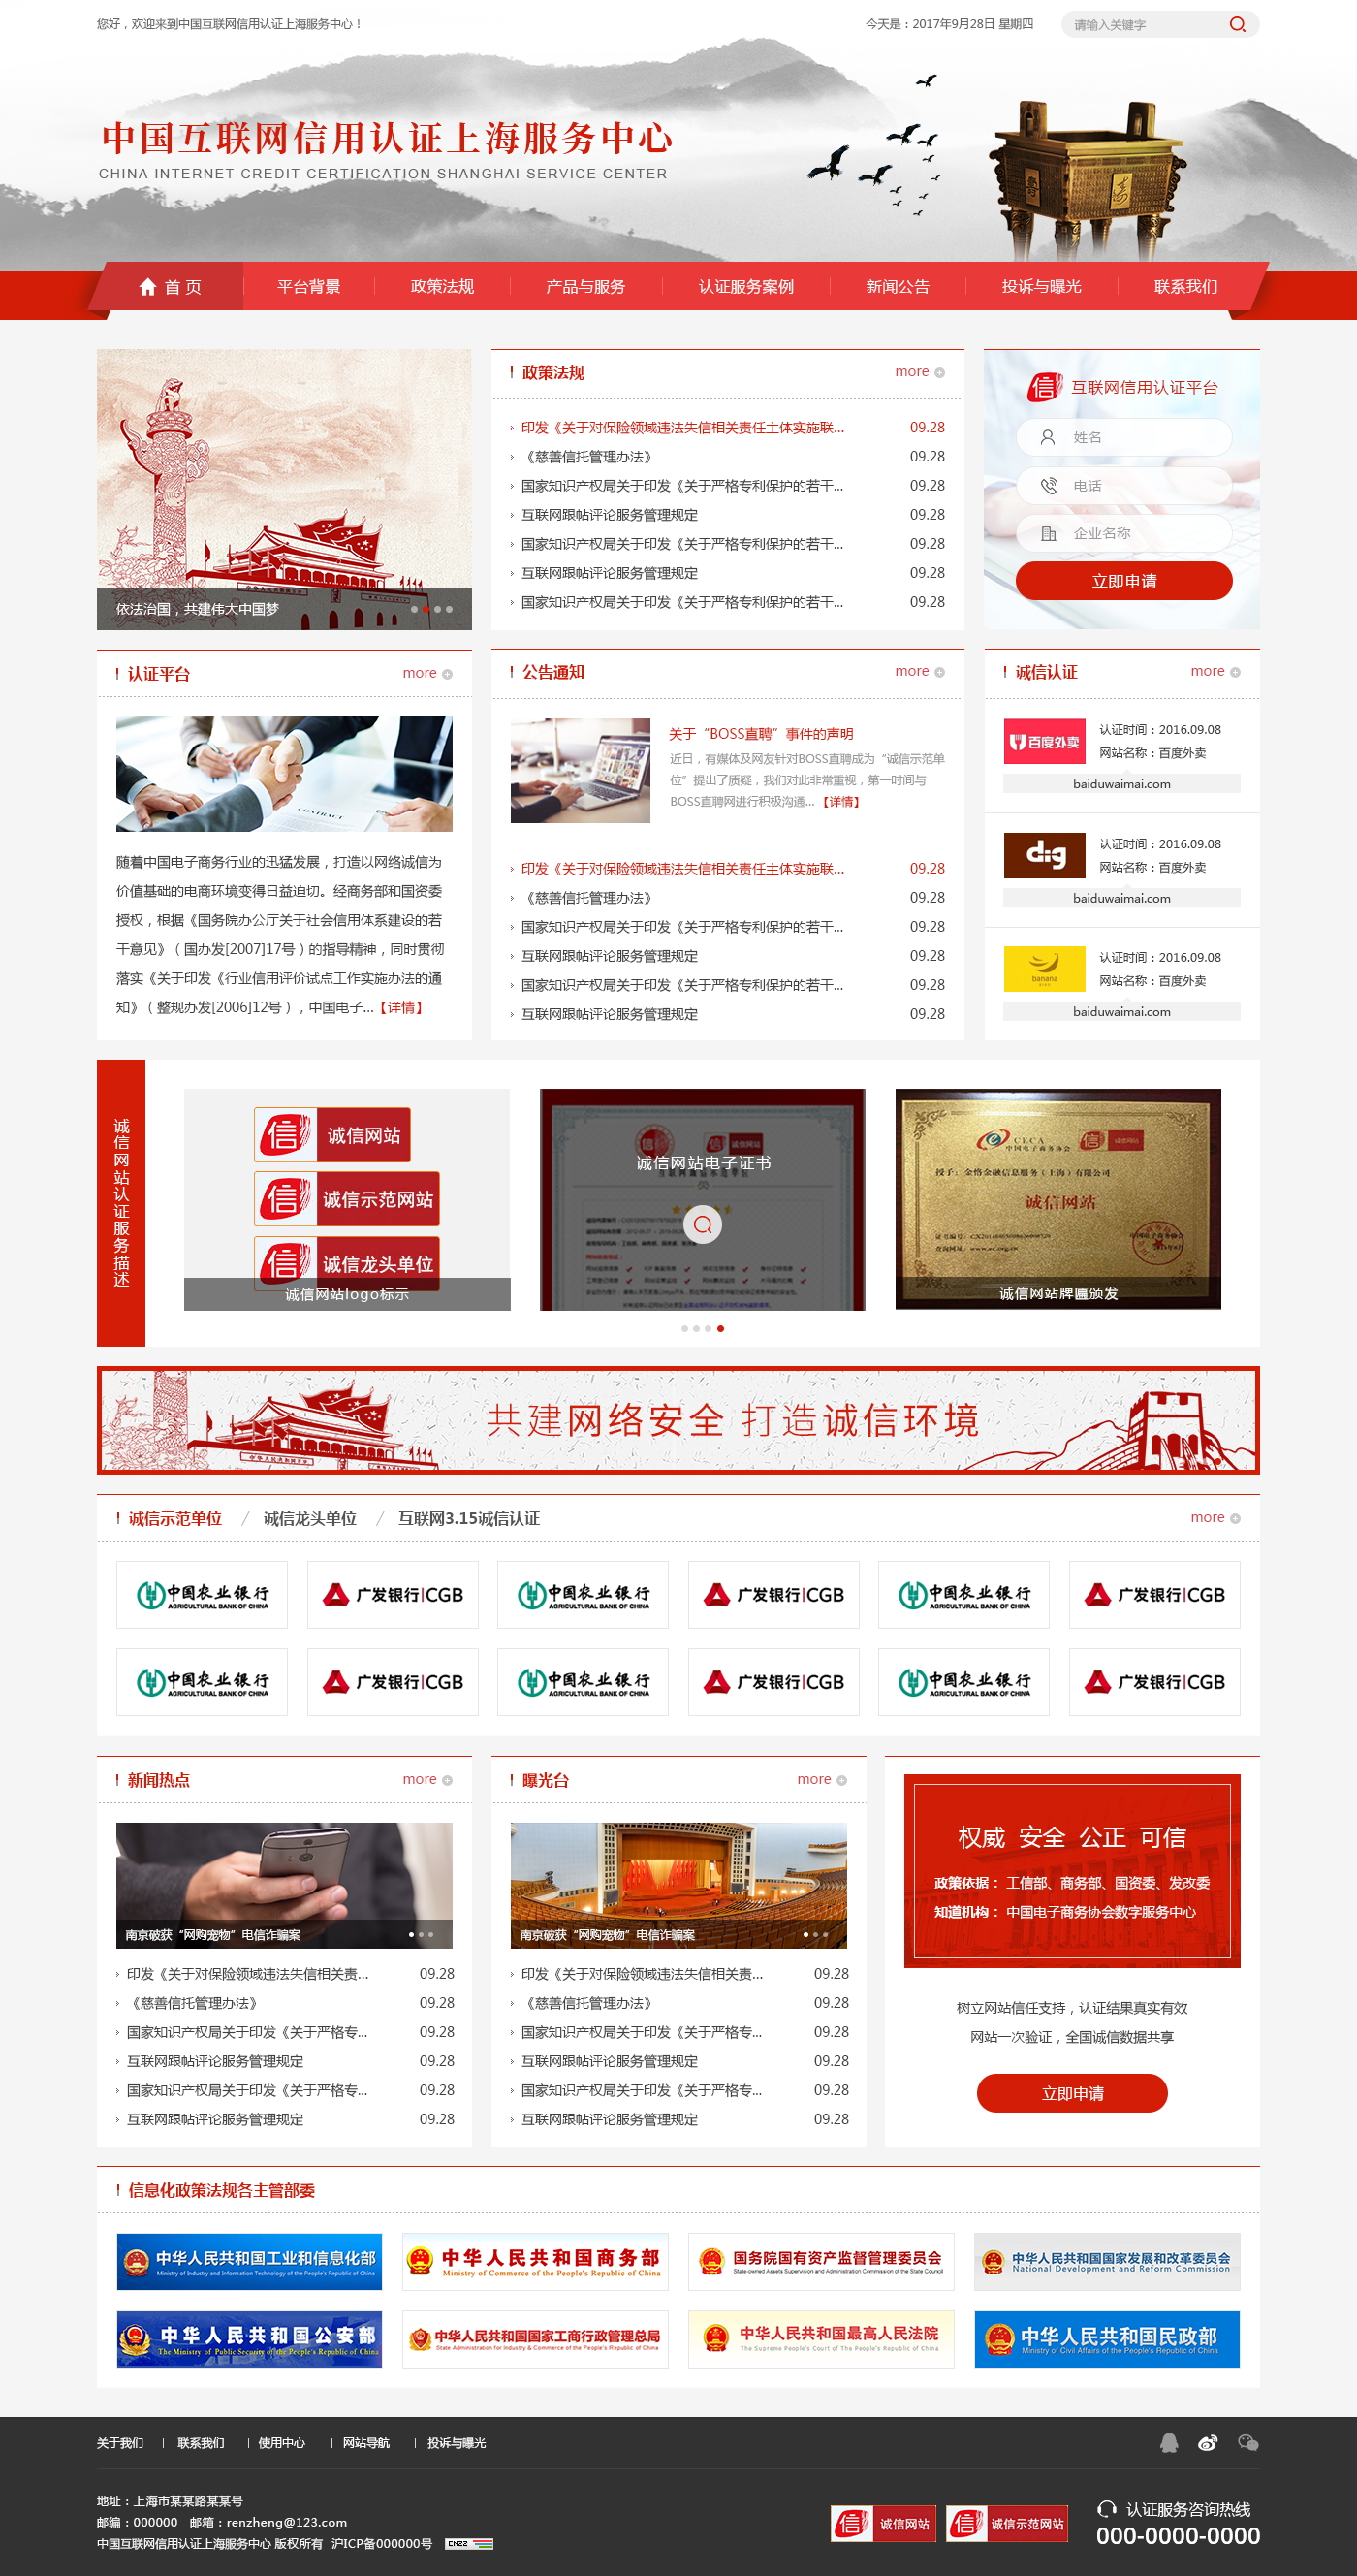 城香网络网站首页设计图.jpg